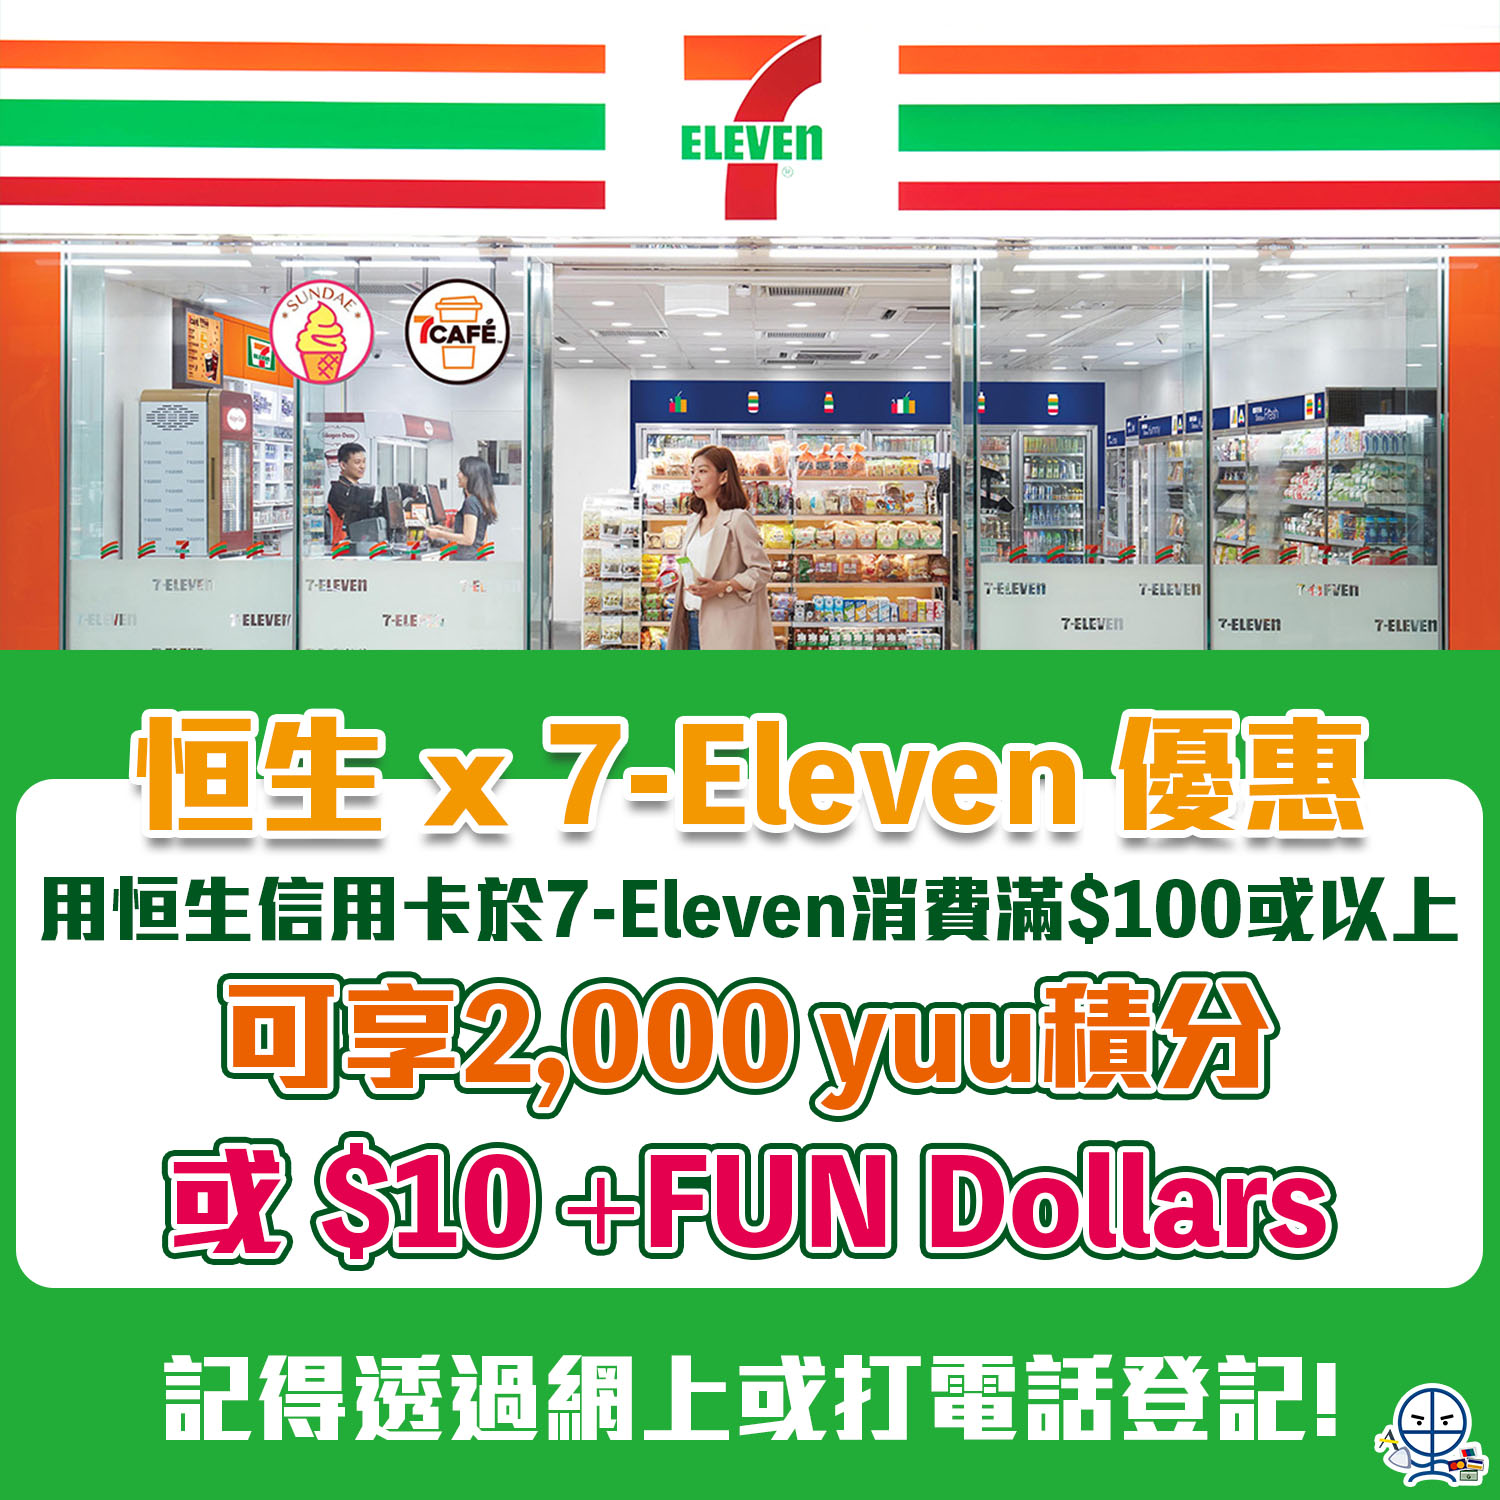 【恒生 7-11便利店優惠】用恒生信用卡到7-Eleven消費滿HK$100即可享2,000 yuu積分 或 $10 +FUN Dollars